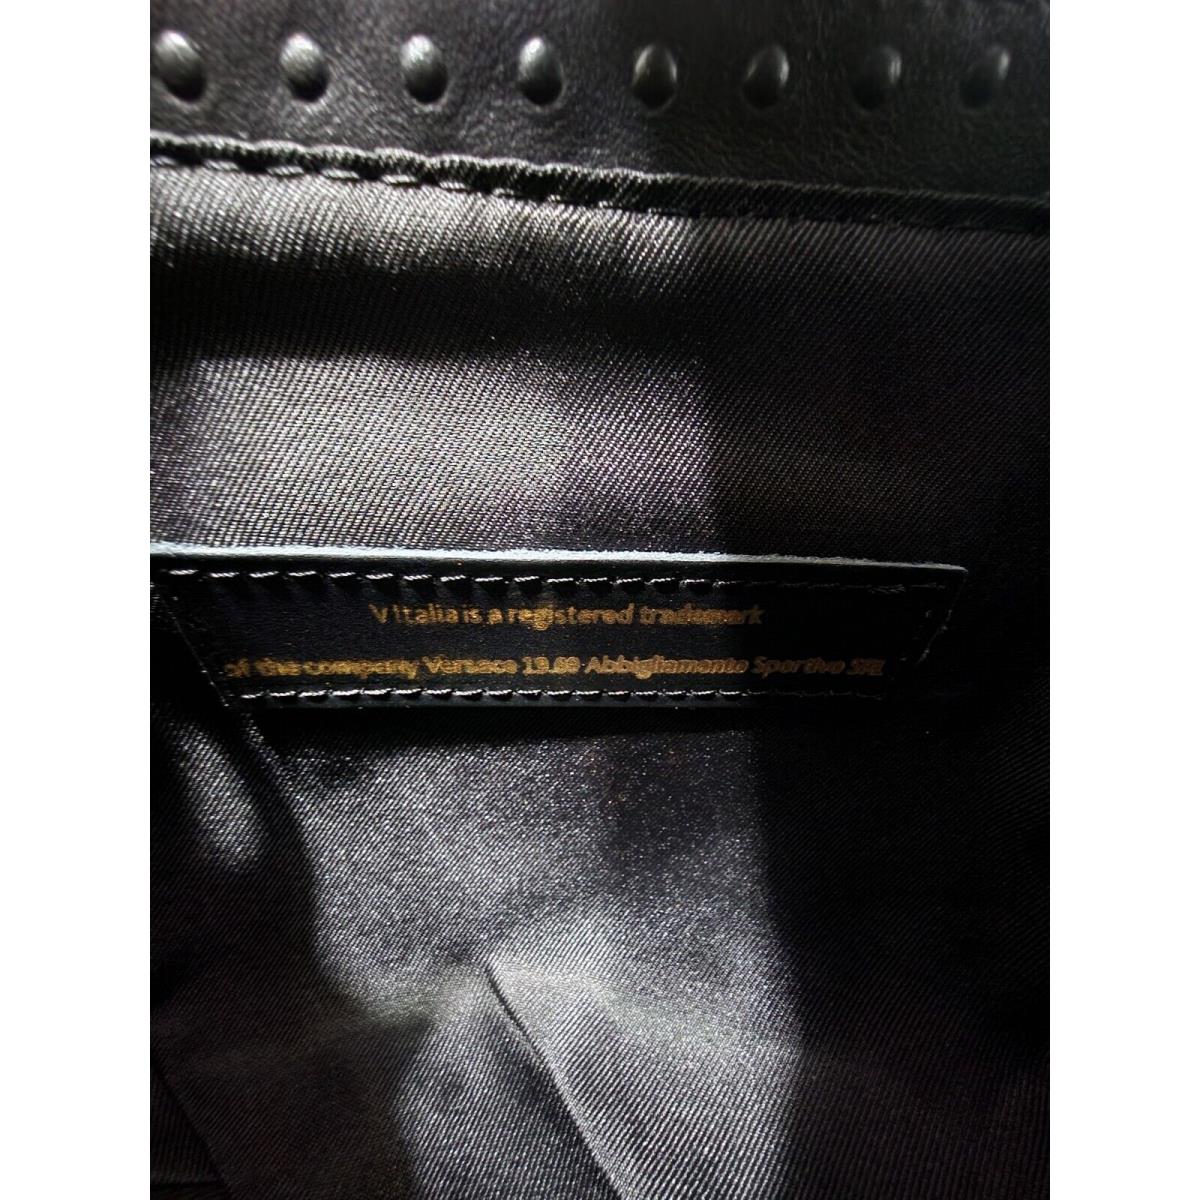 $999 V Italia Versace 1969 Black Leather Croc Embossed Satchel